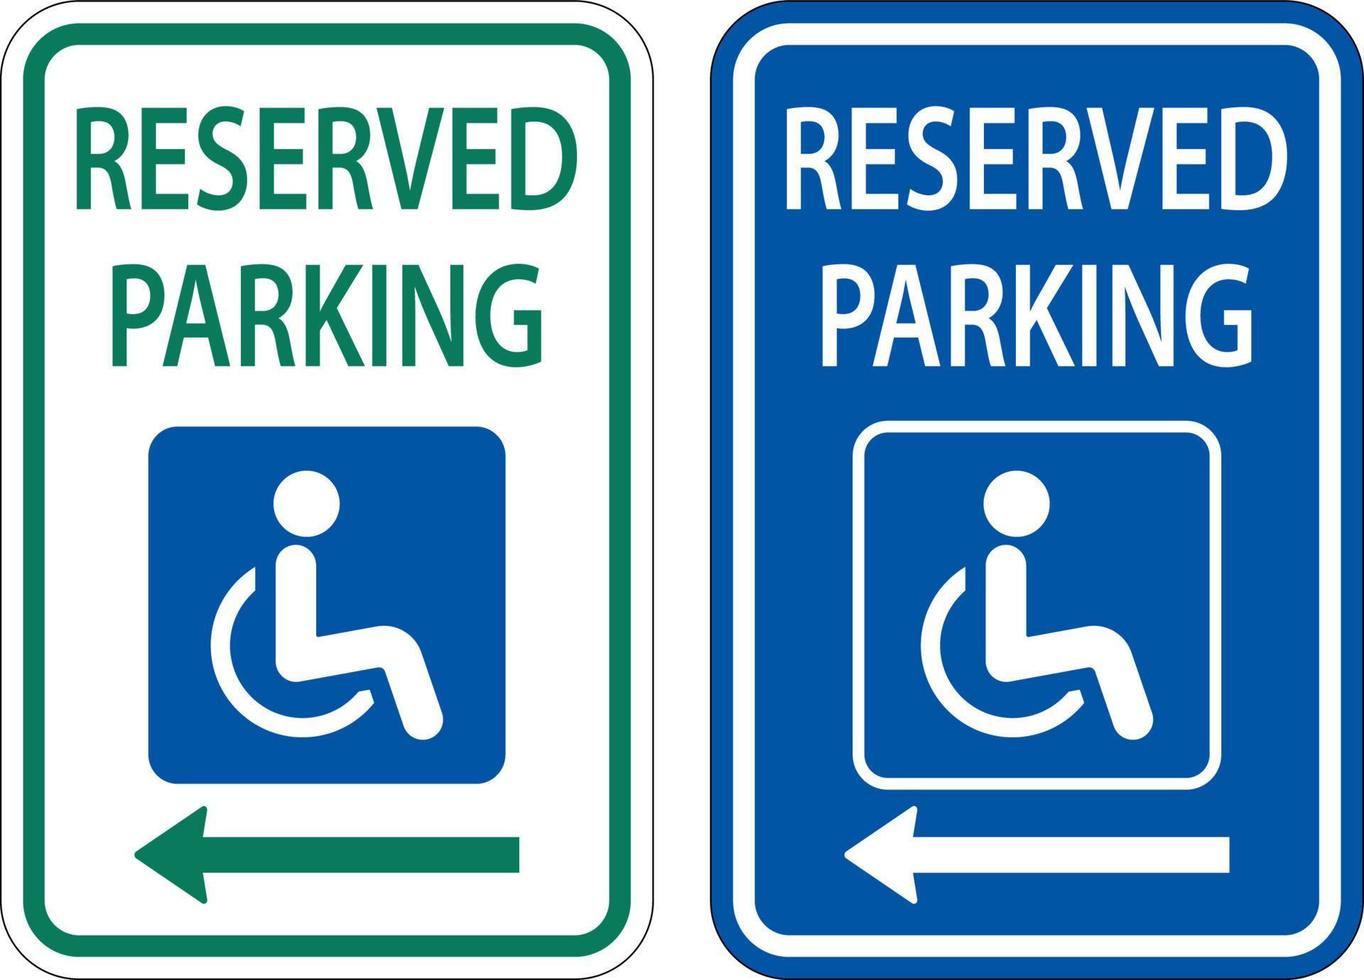 cartello parcheggio riservato accessibile, freccia a sinistra vettore